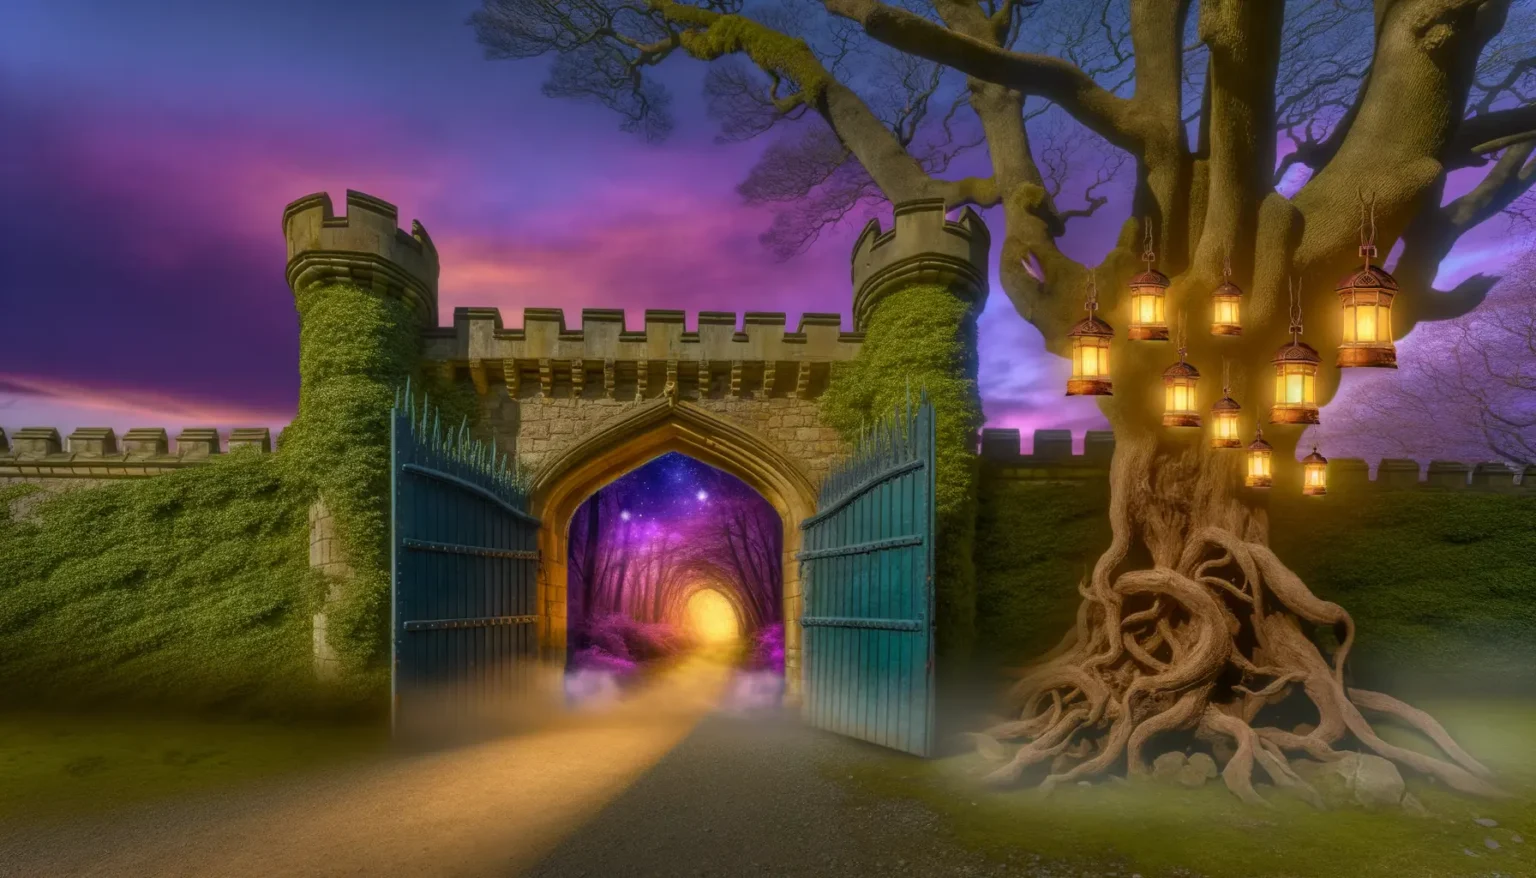 Ein verzaubert wirkendes Tor eines Schlosses bei Dämmerung mit geöffneten blauen Holztüren, die in einen geheimnisvoll leuchtenden Tunnel führen. Umsäumt wird der Eingang von einer mit Efeu bewachsenen Mauer und einem alten, knorrigen Baum, an dem mehrere Laternen hängen. Der Himmel über der Szene zeigt eine Mischung aus purpurnen und blauen Farbtönen, die eine mystische Atmosphäre erzeugen.